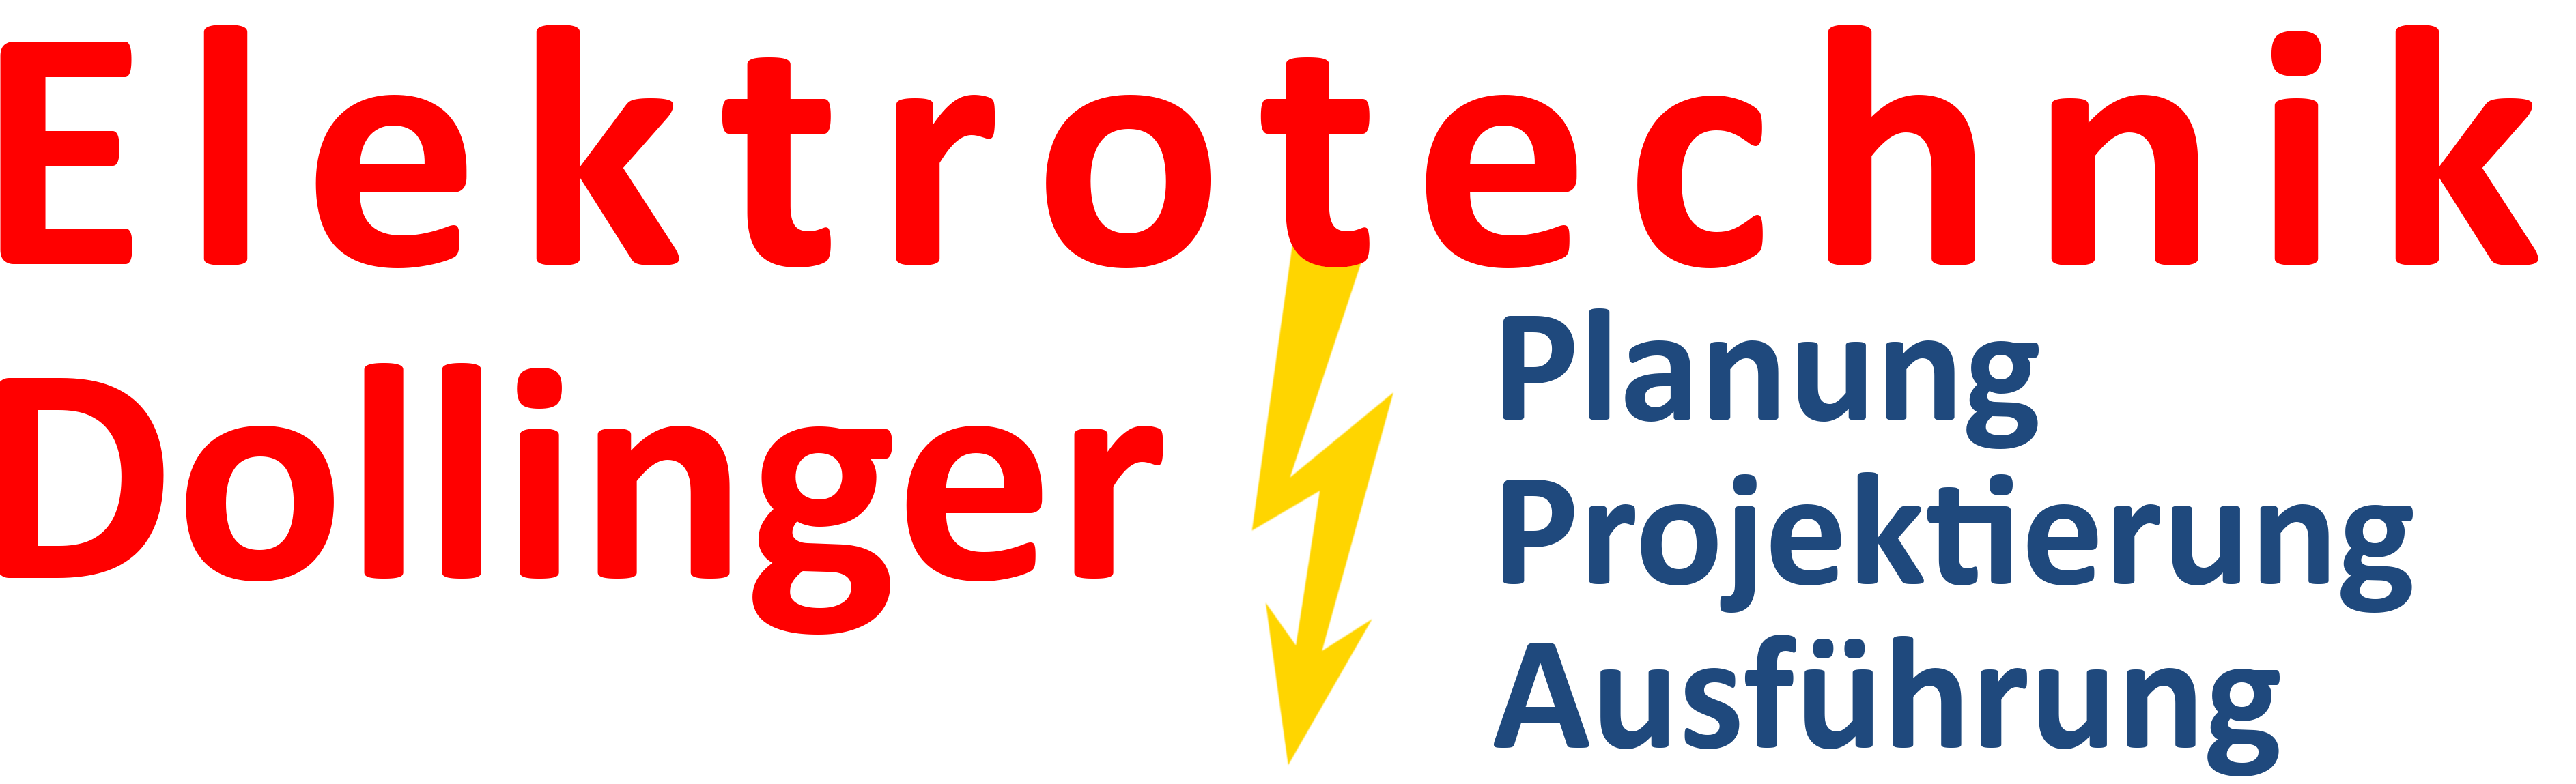 Elektrotechnik Dollinger Logo